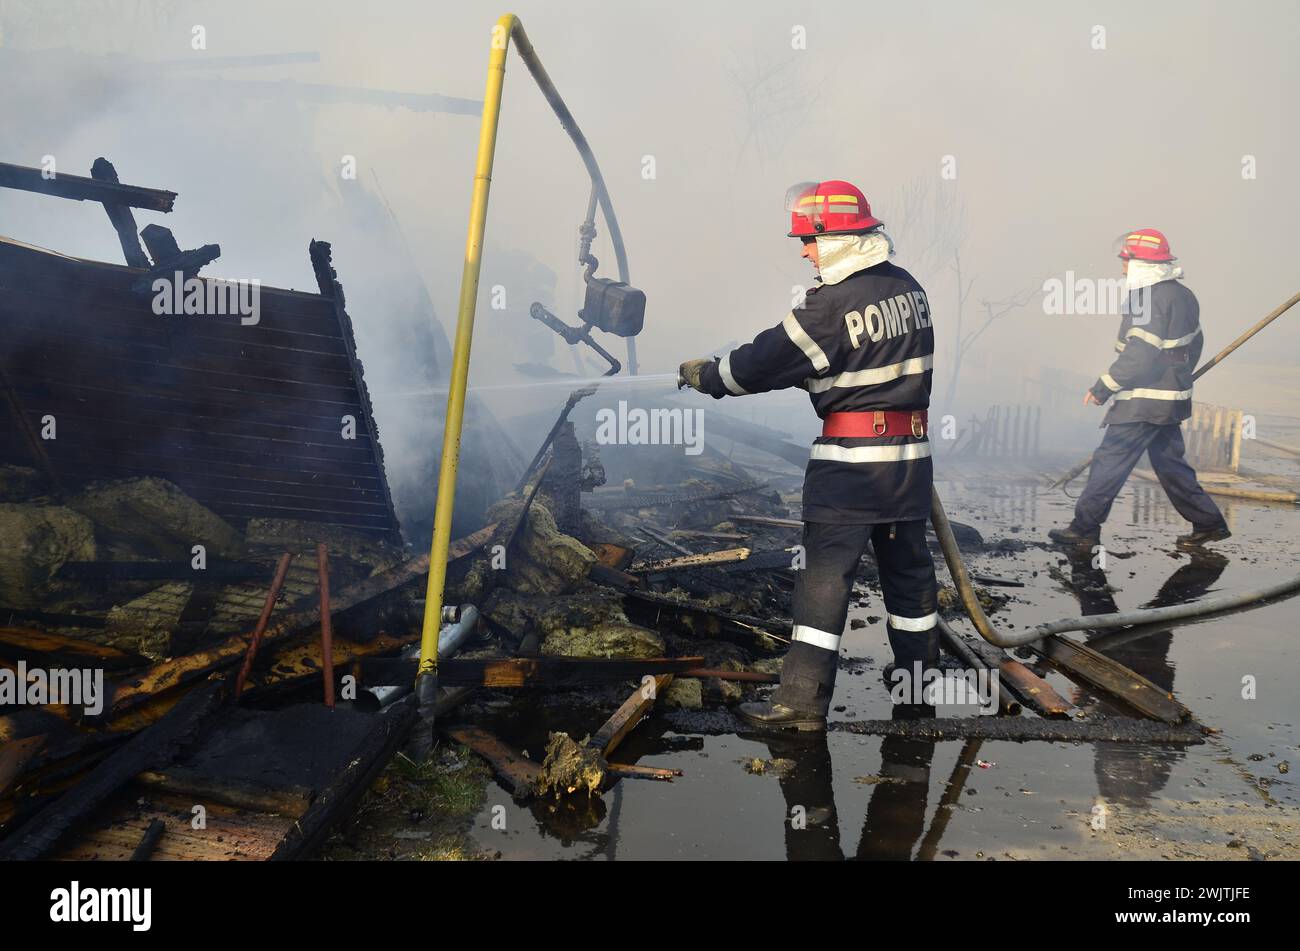 Simeria Veche, comté de Hunedoara, Roumanie, 20 mars 2012 Un incendie s'est déclaré dans un atelier d'une école pour enfants handicapés Banque D'Images